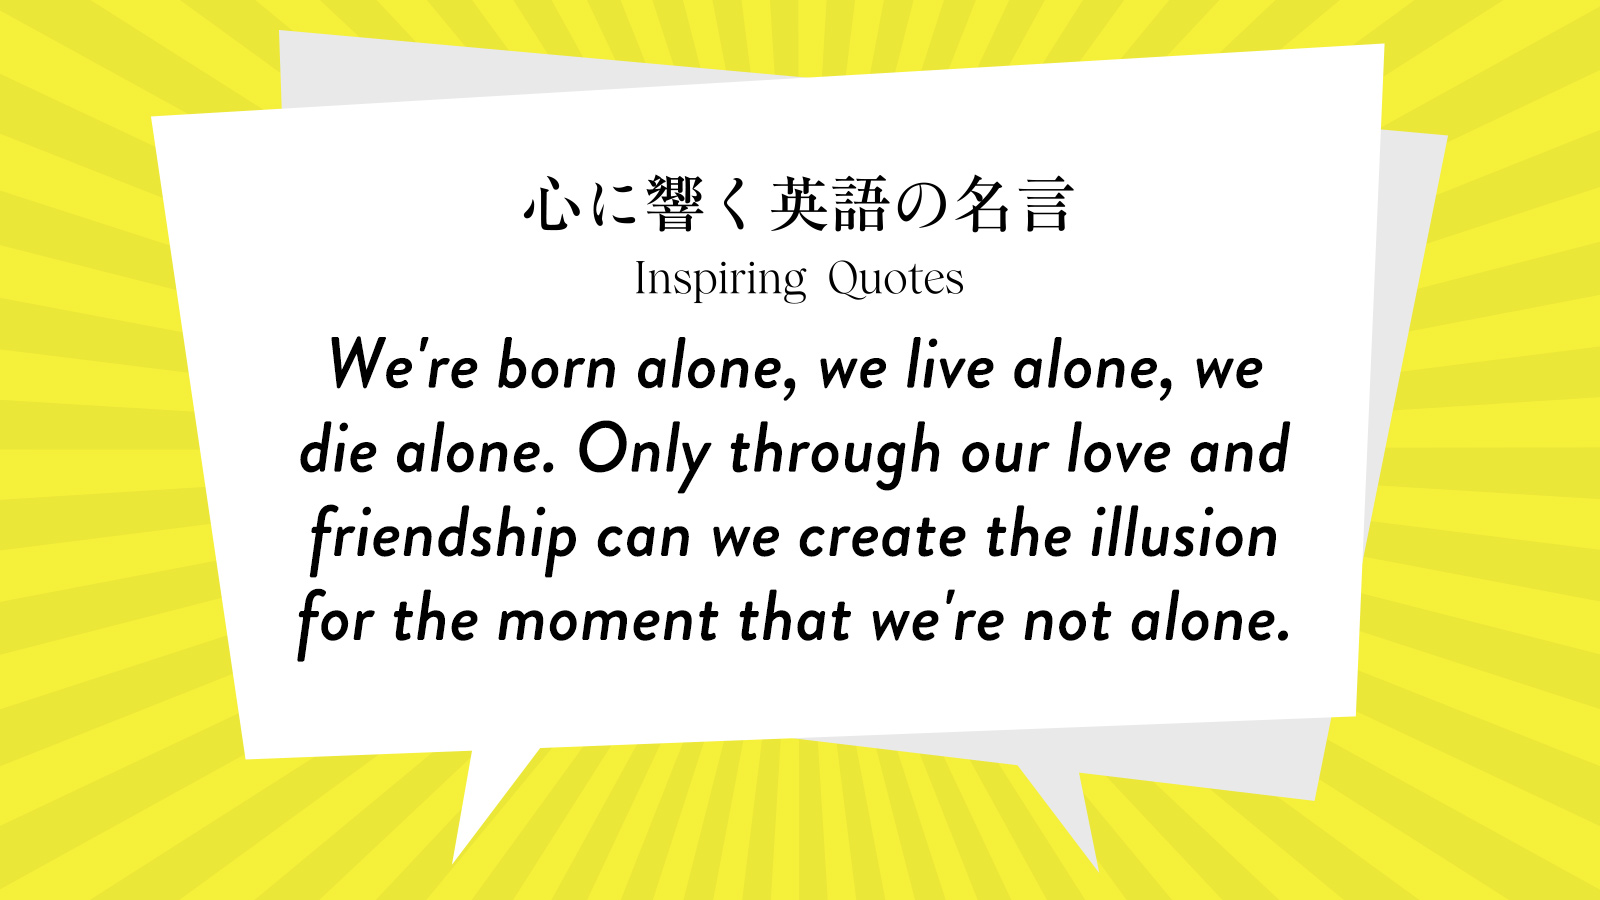 今週の名言 “We\'re born alone, we live alone, we die alone. Only through our love and friendship~” | Inspiring Quotes: 心に響く英語の名言